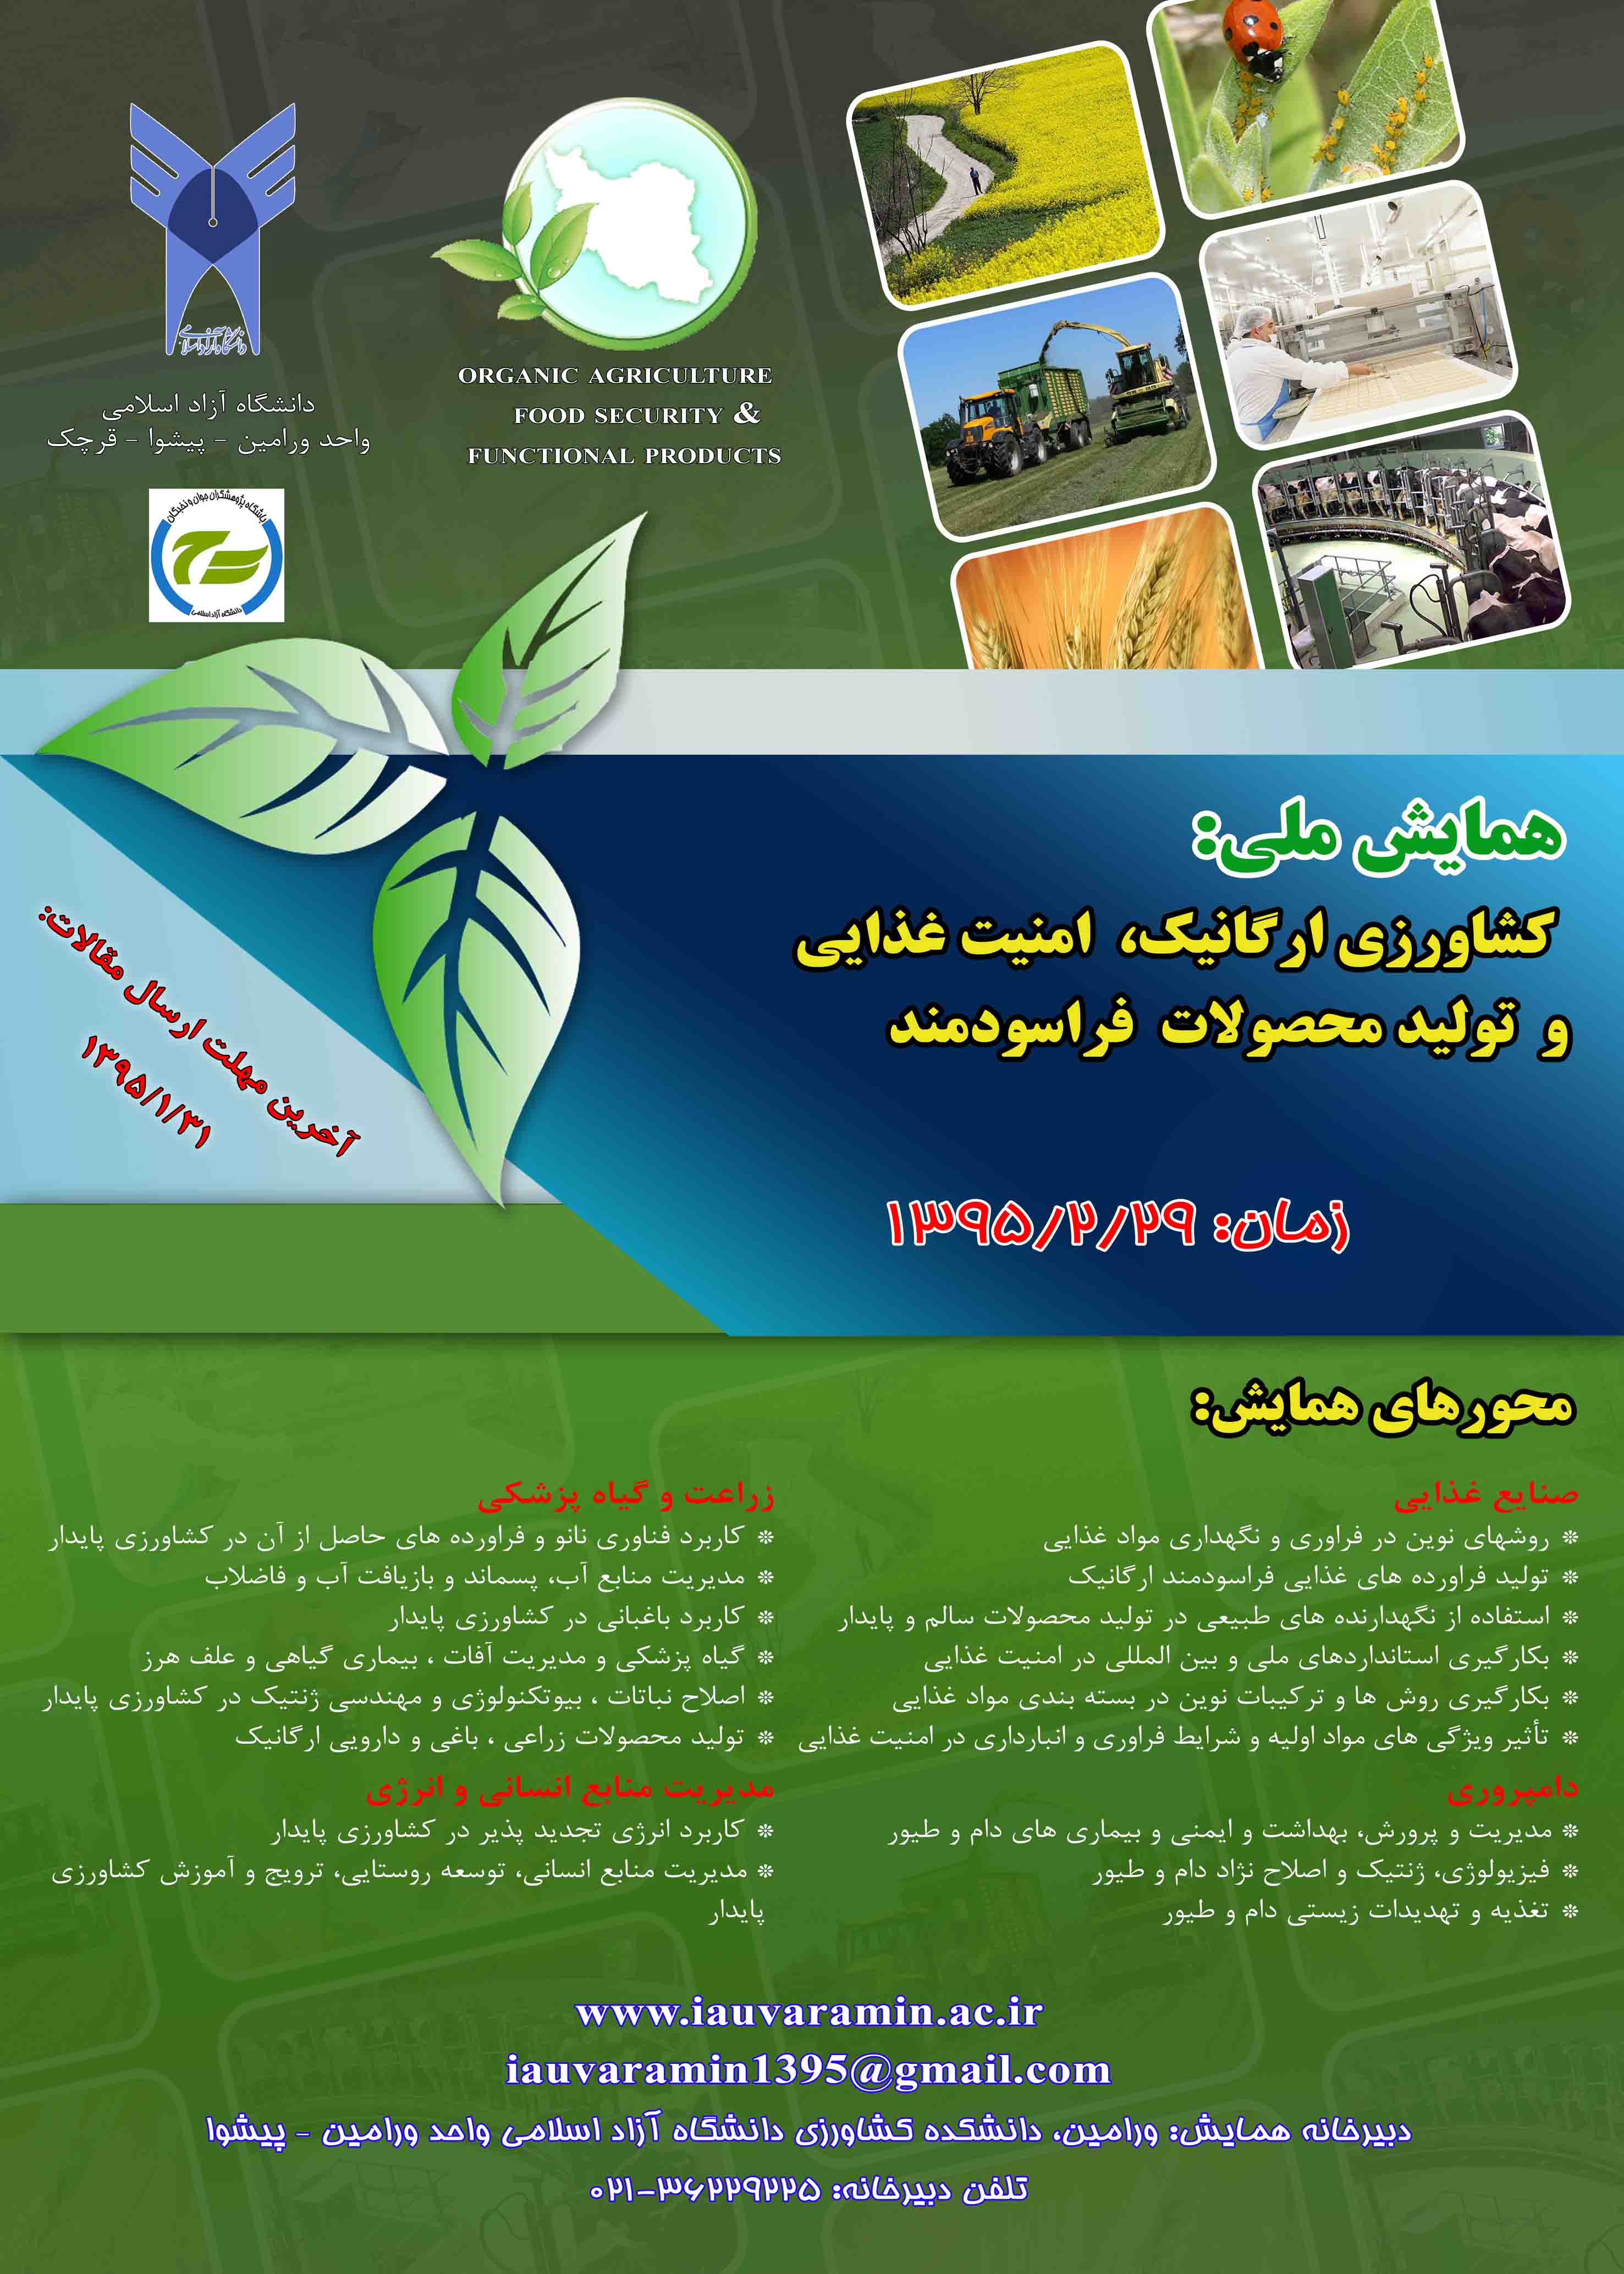 پوستر کشاورزی ارگانیک، امنیت غذایی و تولید محصولات فراسودمند